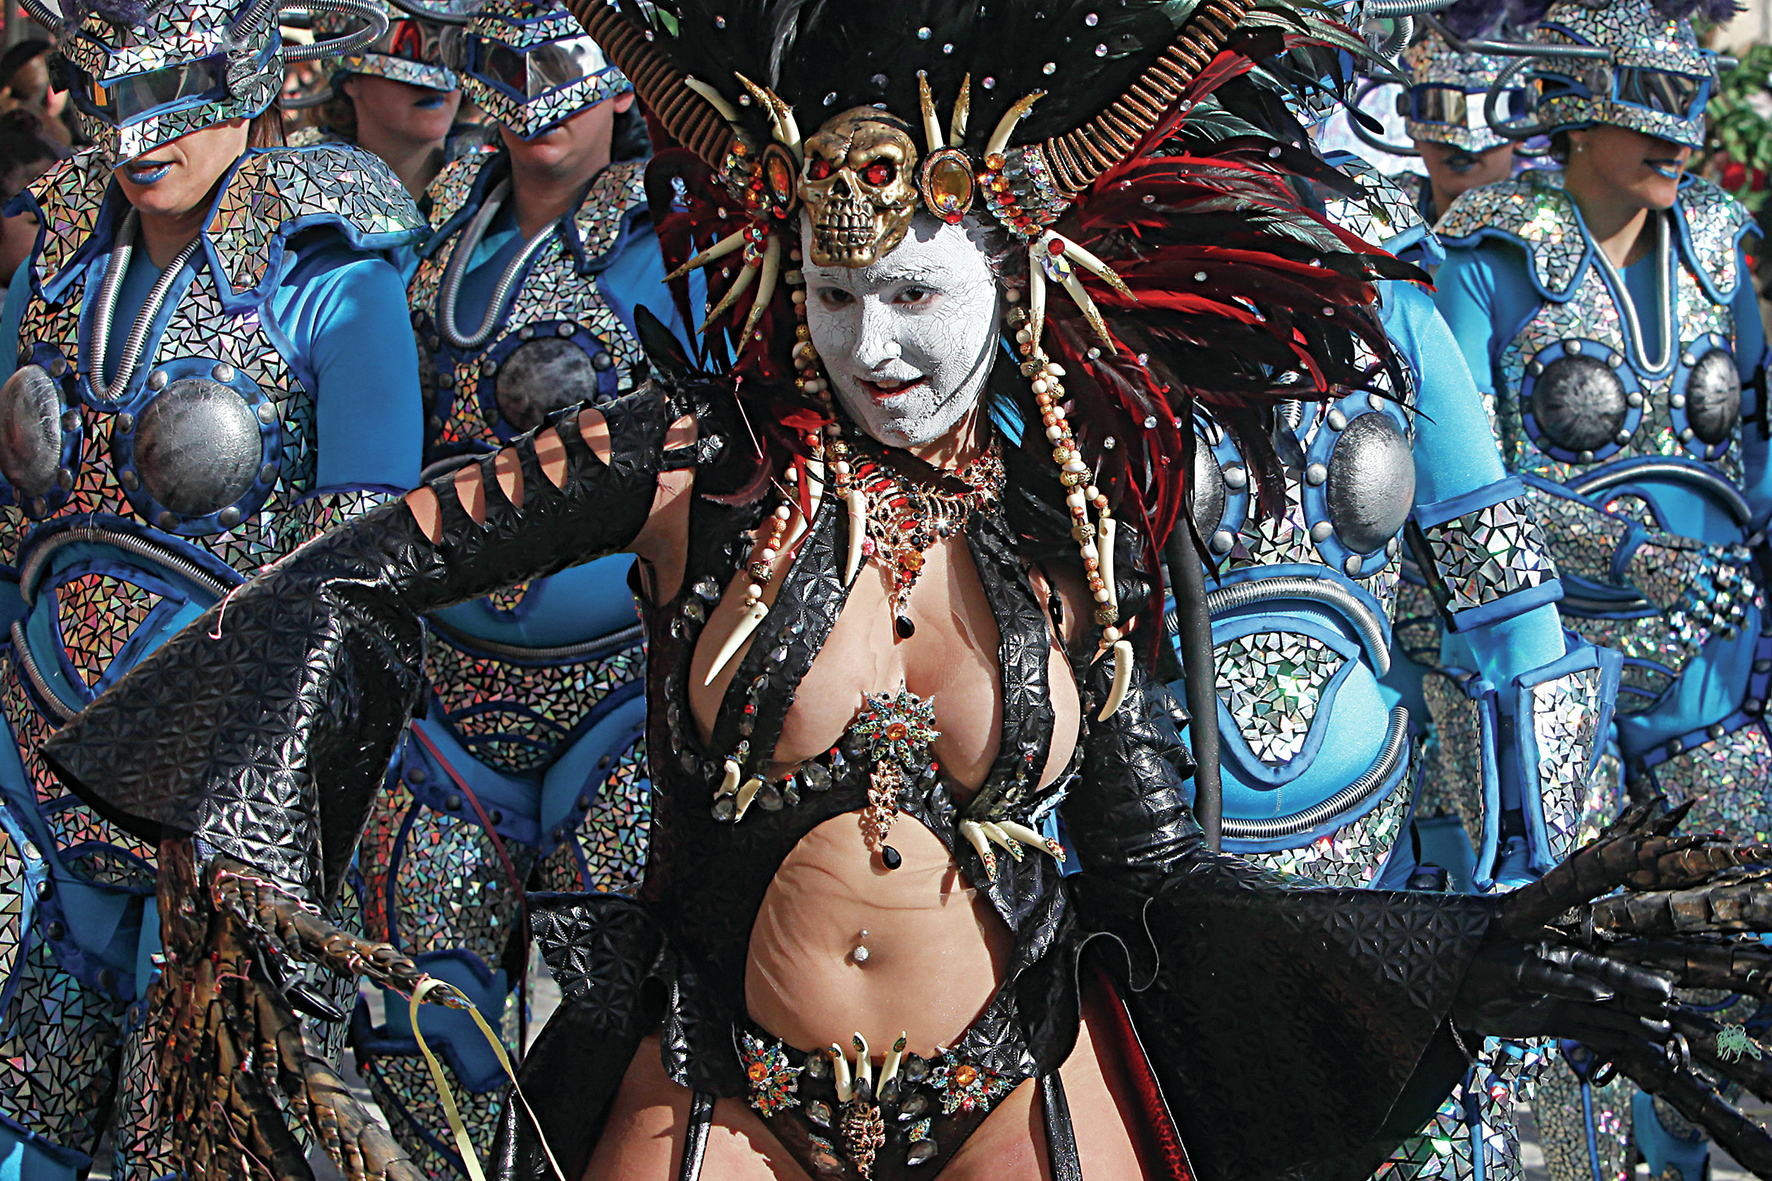 Carnaval. Festa voltou em grande ao país com gastos de milhões